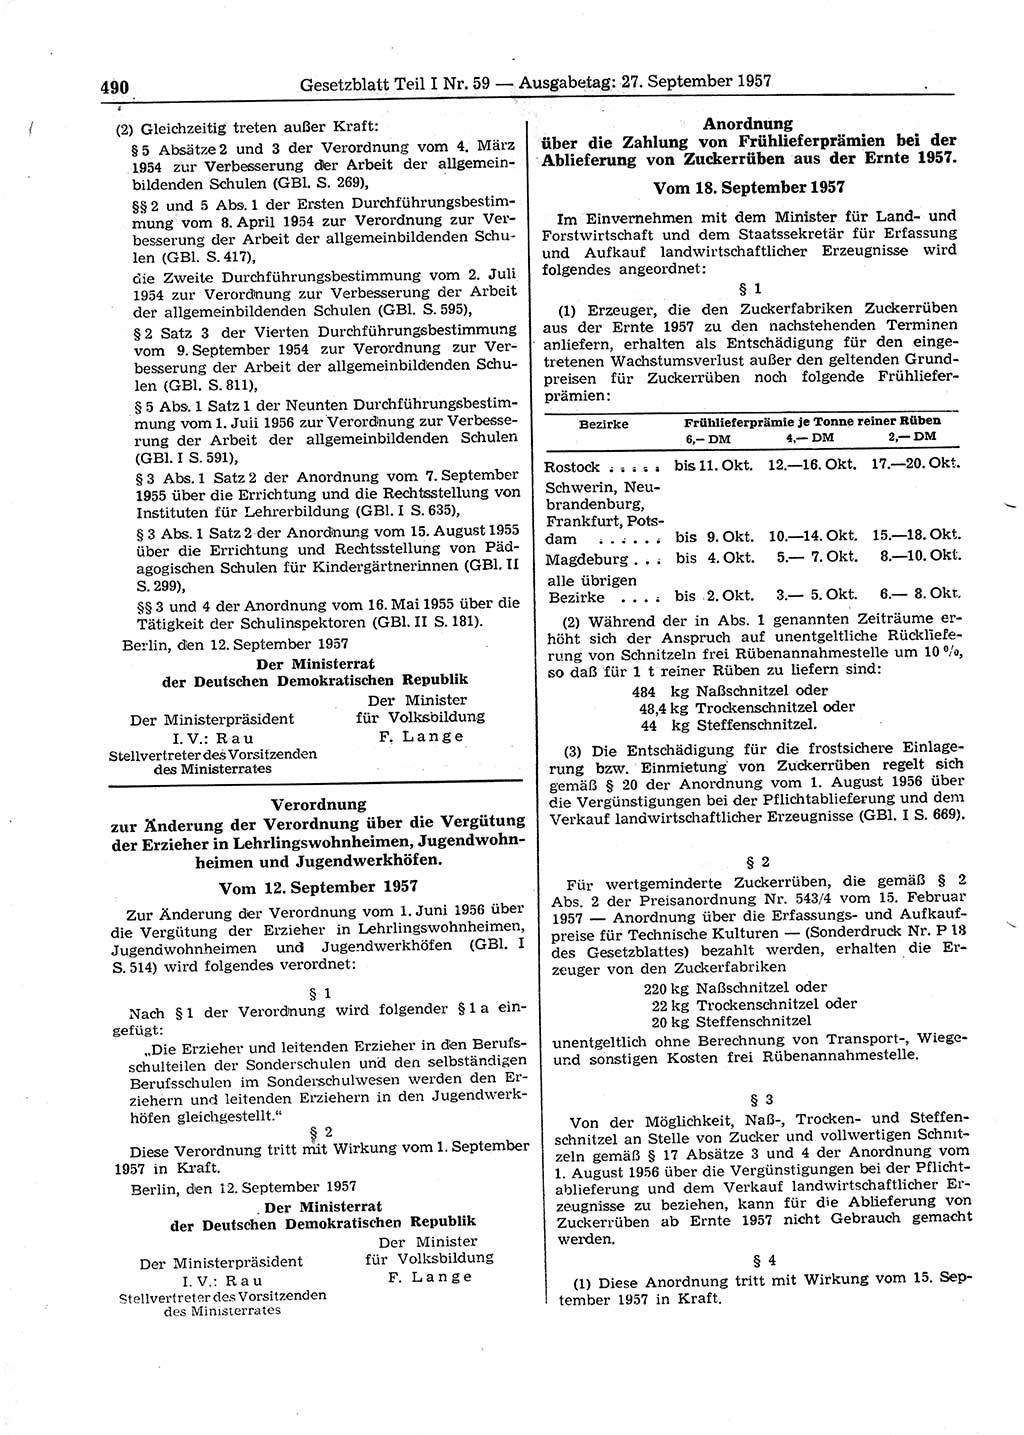 Gesetzblatt (GBl.) der Deutschen Demokratischen Republik (DDR) Teil Ⅰ 1957, Seite 490 (GBl. DDR Ⅰ 1957, S. 490)